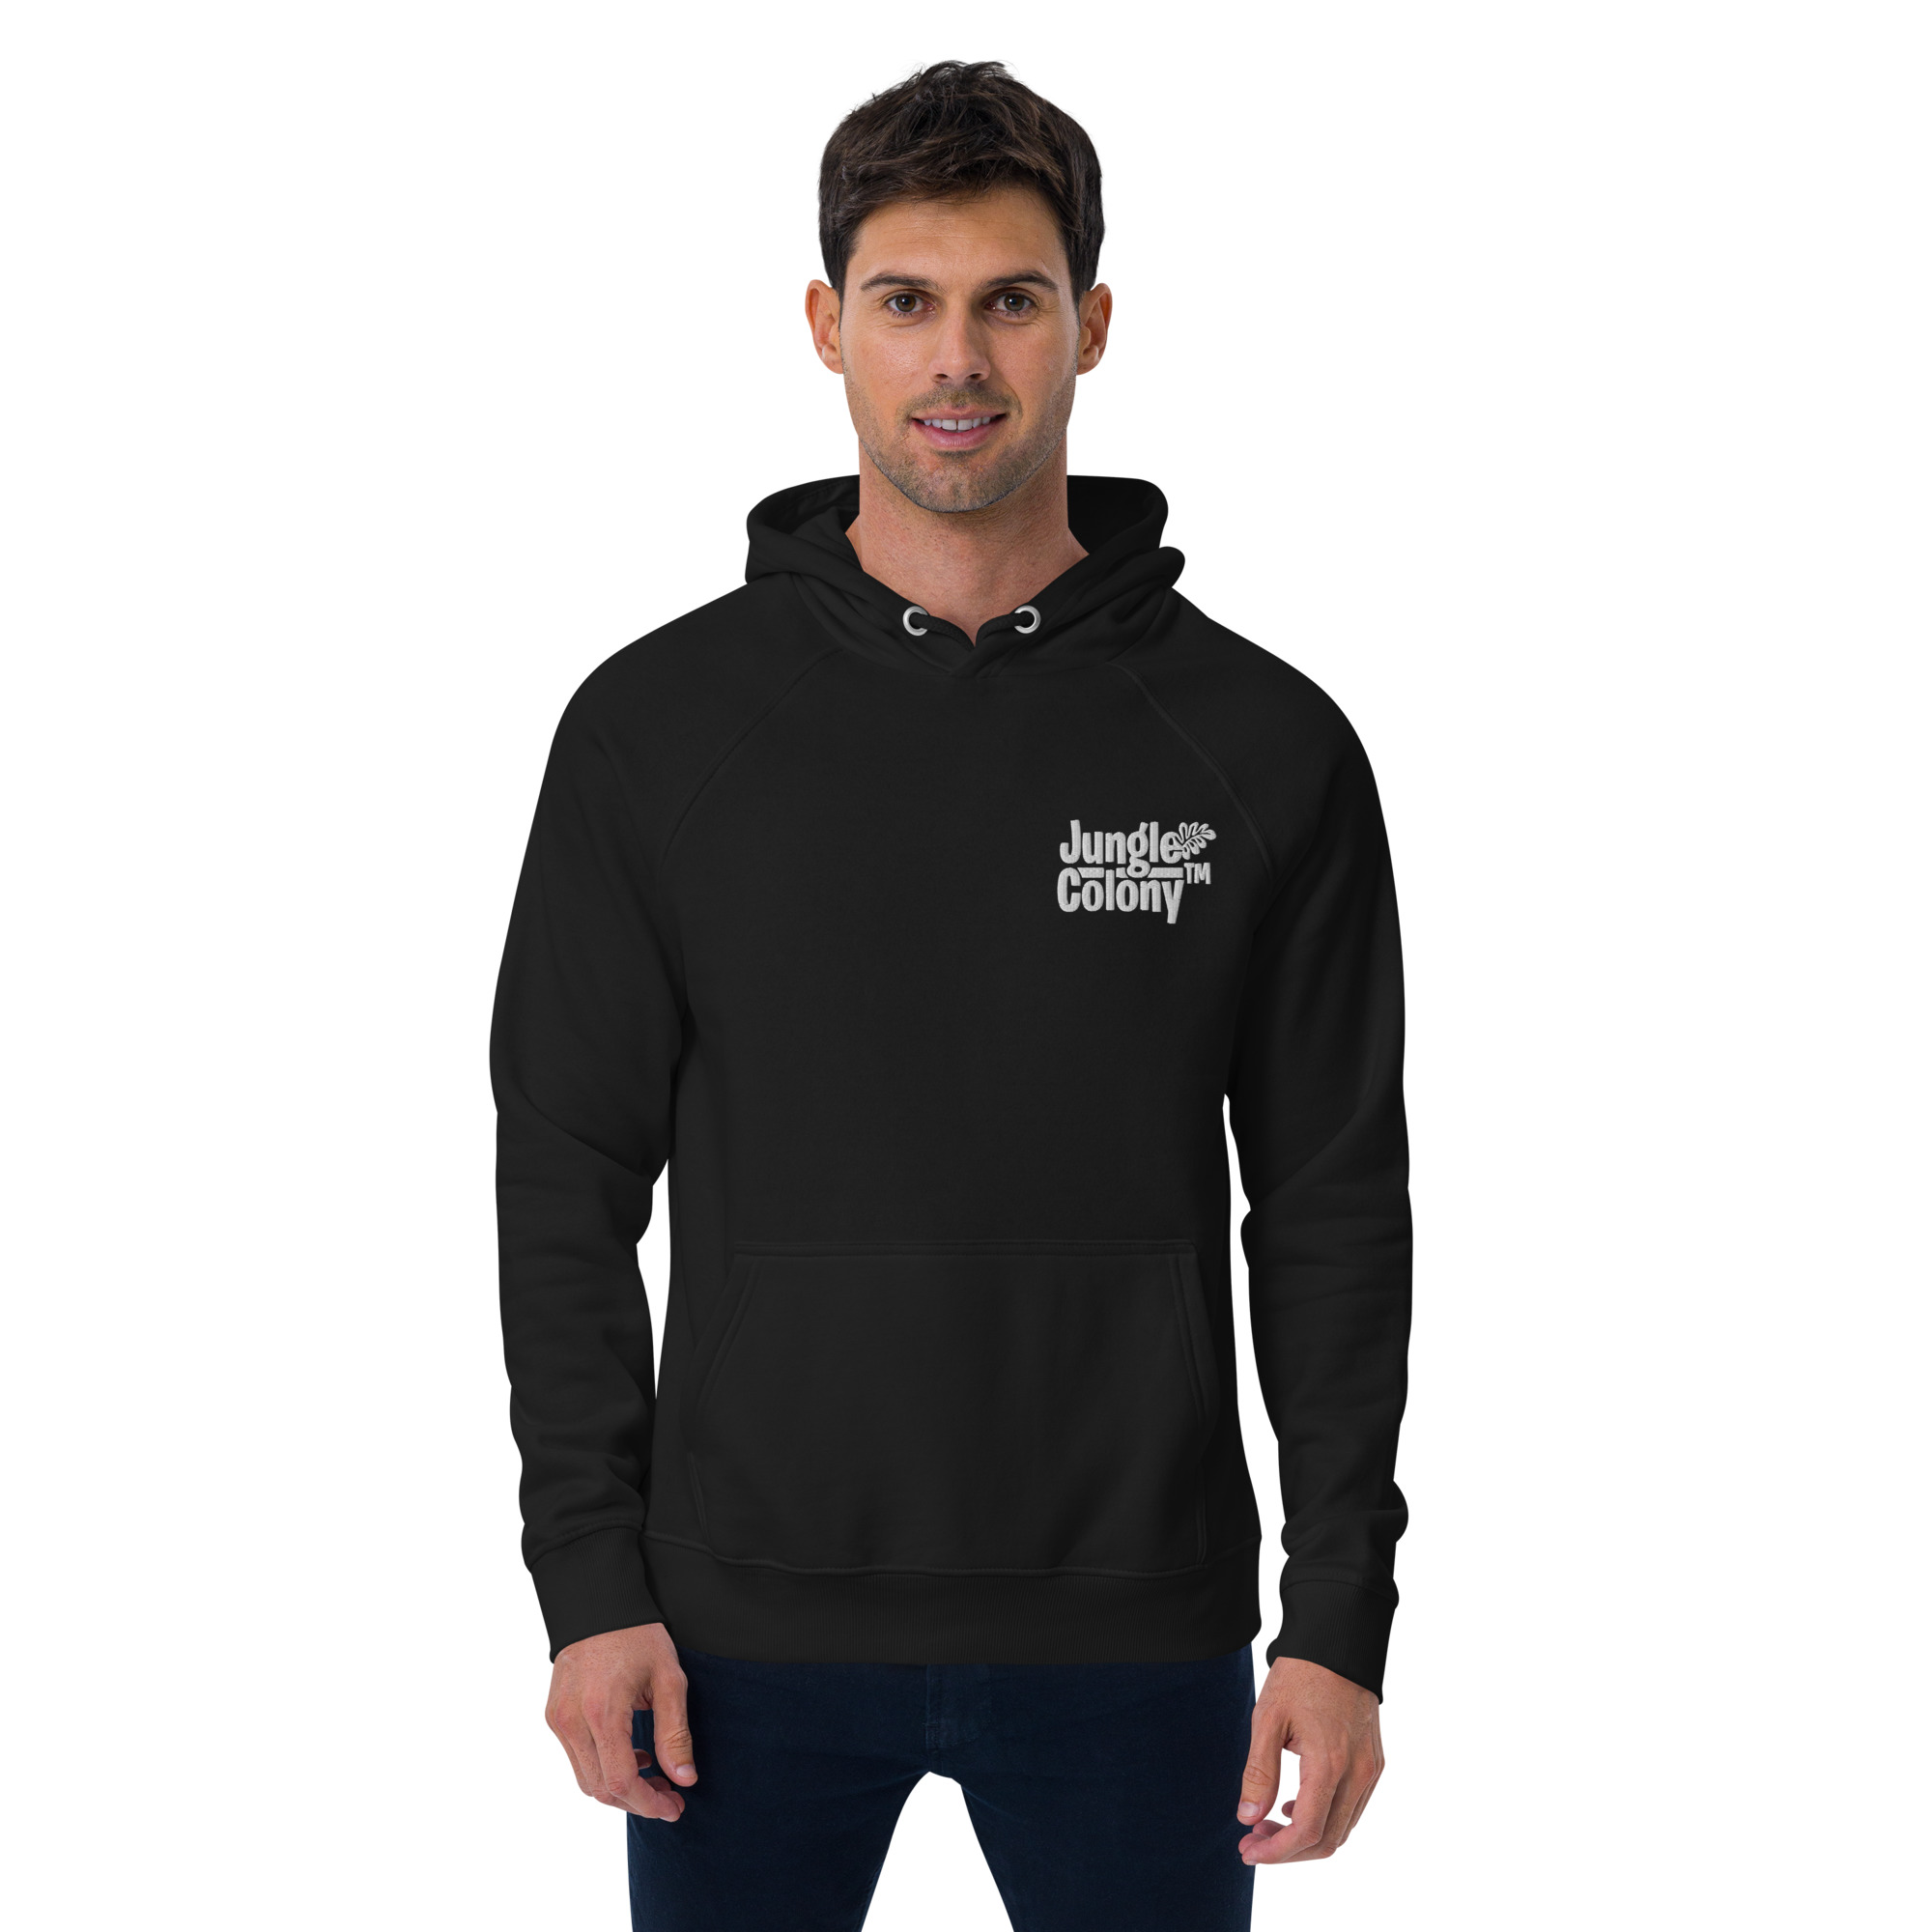 unisex-eco-raglan-hoodie-black-front-6420086c866d6.jpg